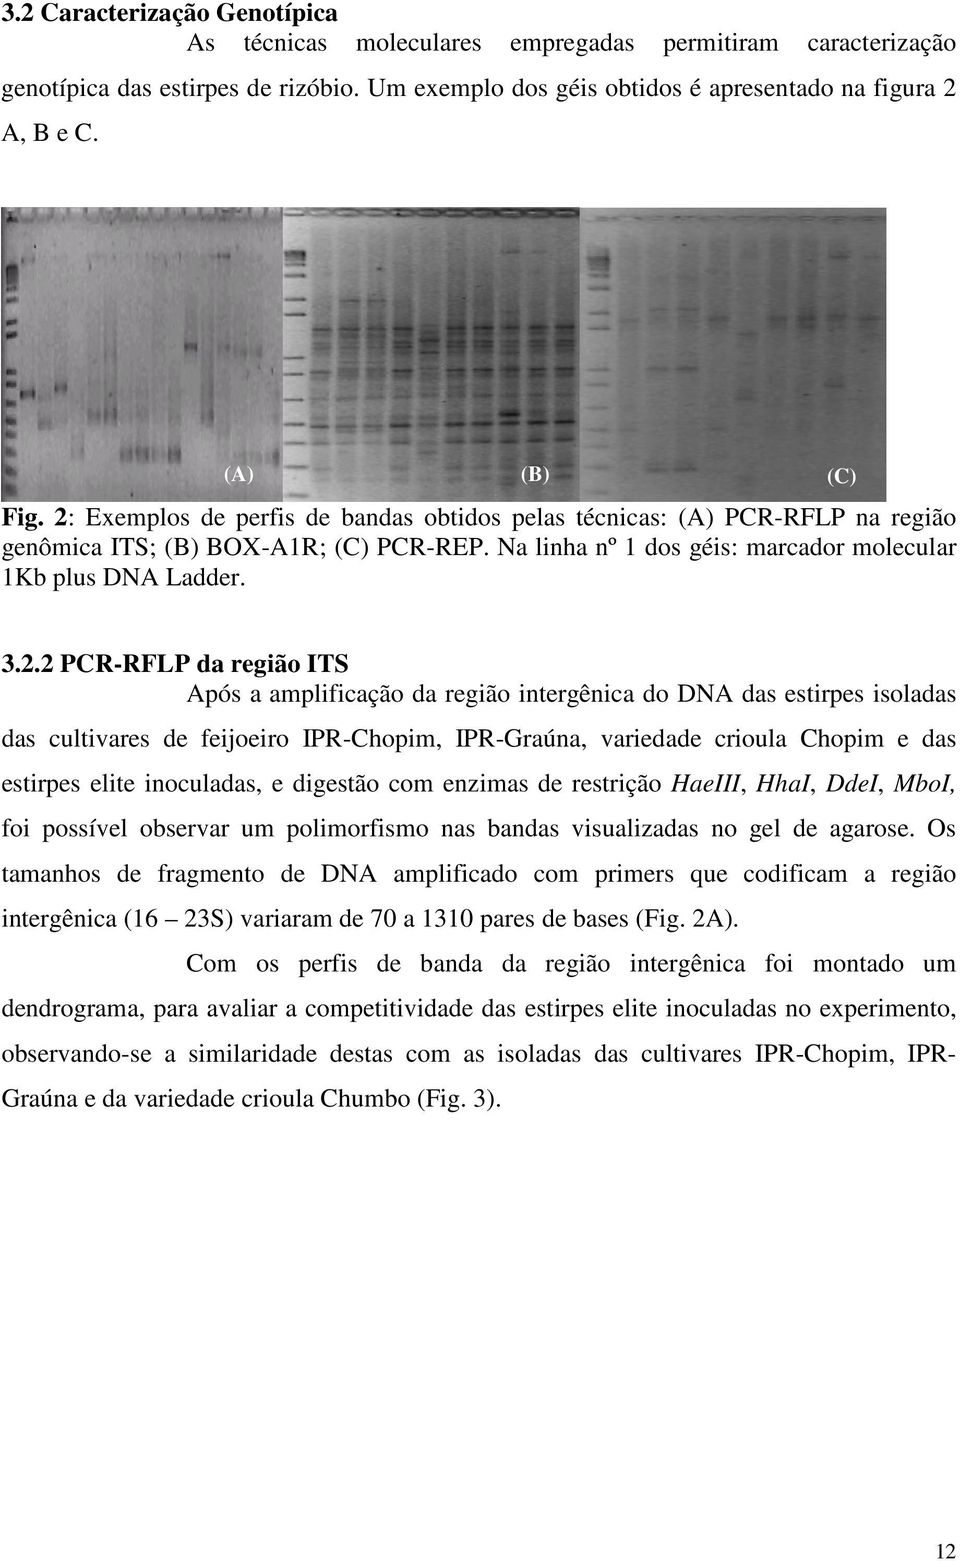 3.2.2 PCR-RFLP da região ITS Após a amplificação da região intergênica do DNA das estirpes isoladas das cultivares de feijoeiro IPR-Chopim, IPR-Graúna, variedade crioula Chopim e das estirpes elite